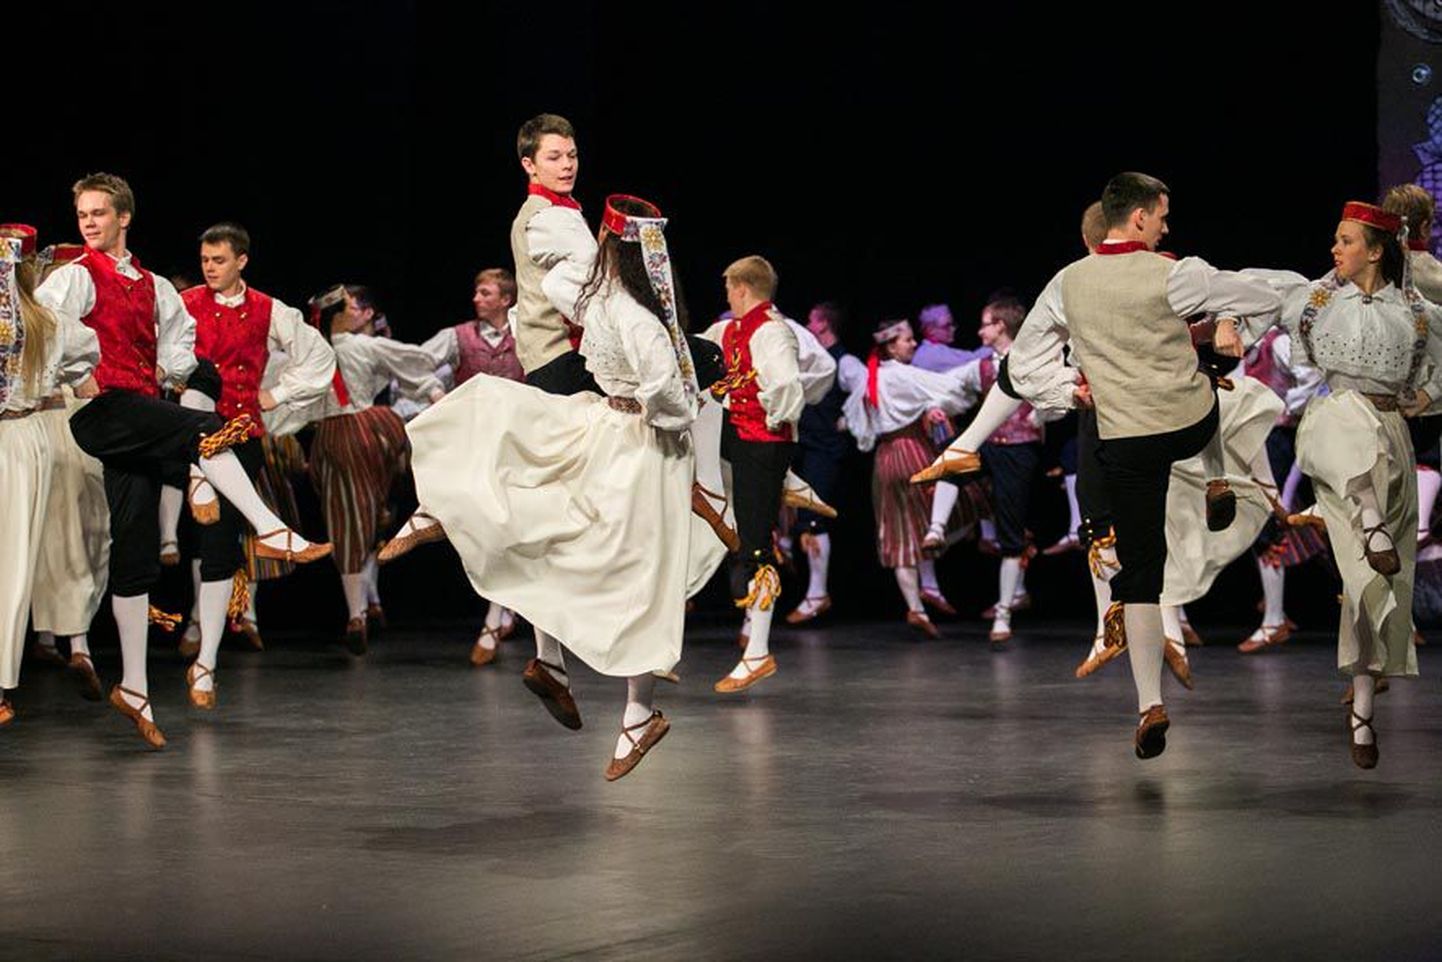 Tänaõhtusel kontserdil astub viie rühma seas Paide kultuurikeskuses üles ka Paide ühisgümnaasiumi vilistlasrühm, kellele see on viimane esinemine. Pildil tantsivad nad kultuurikeskuses Eesti Vabariigi 96. aastapäeva kontsertaktusel.